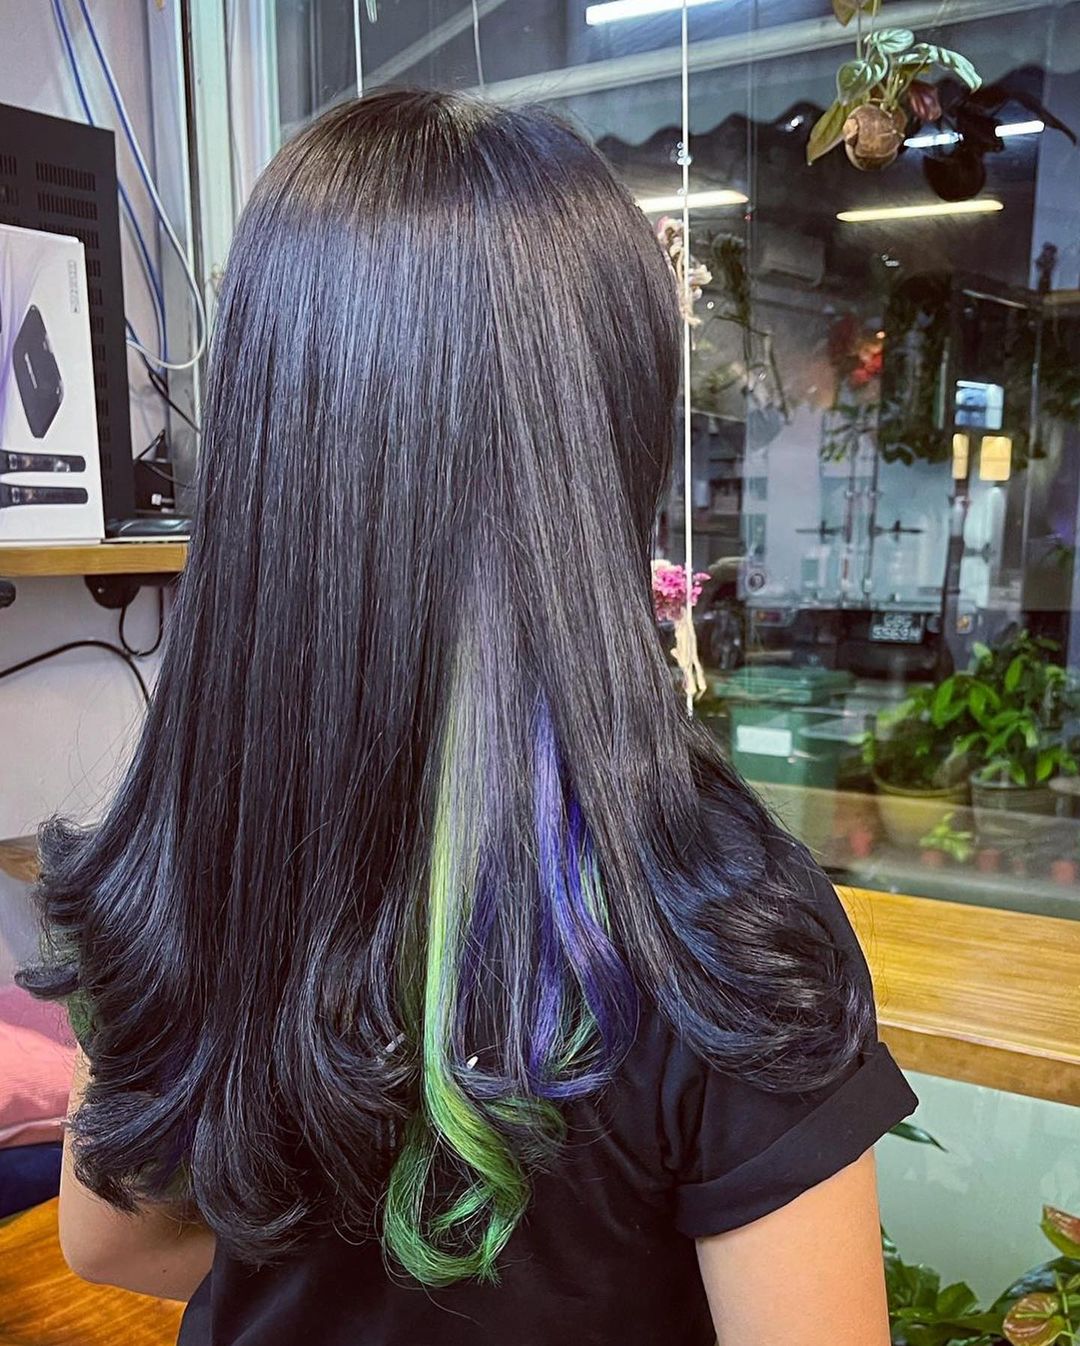 peekaboo azul e verde em cabelo preto